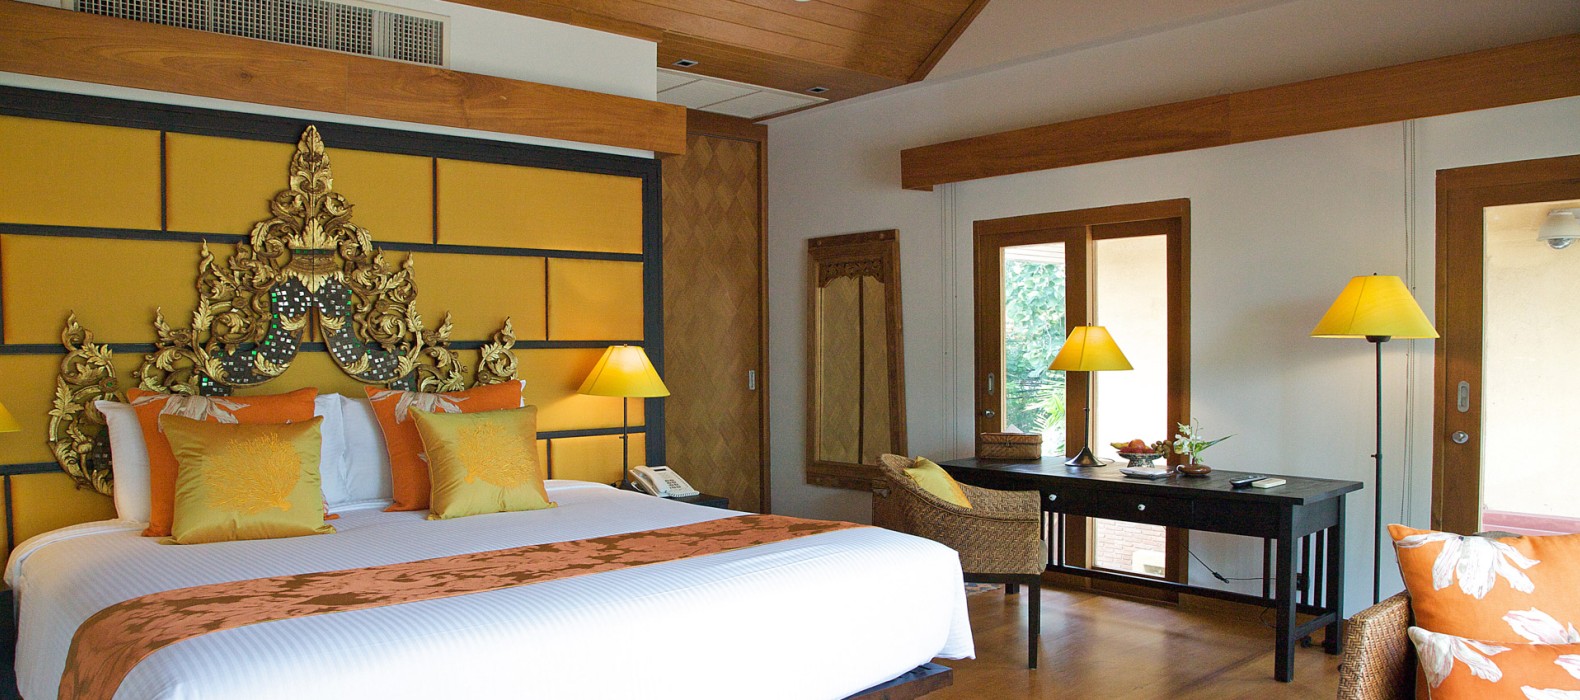 Bedroom view of Villa Dali in Koh Samui